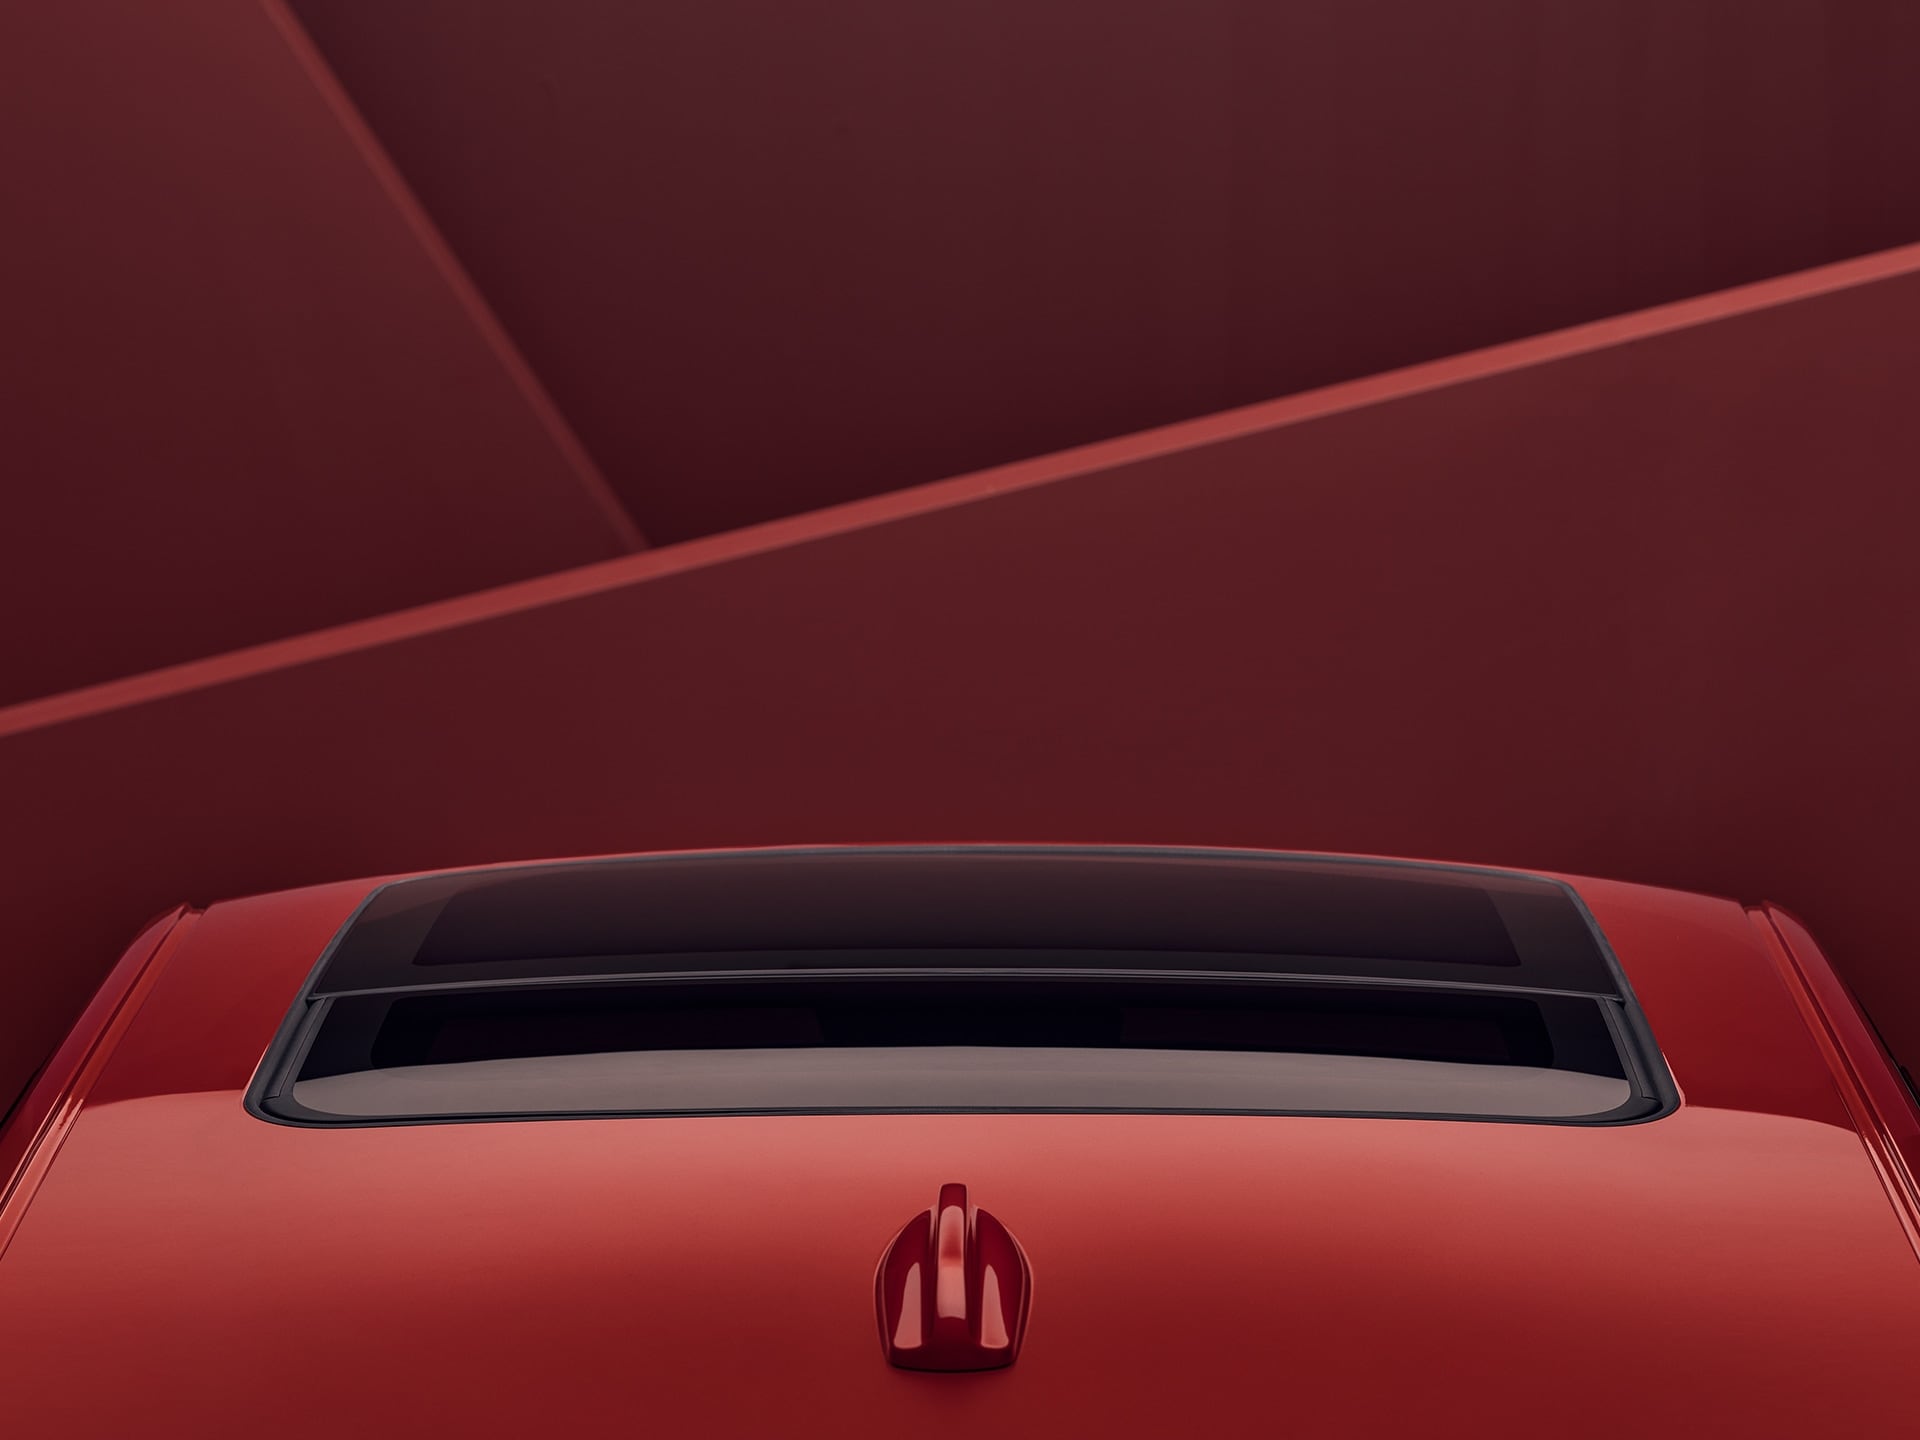 صورة من الأعلى لفولفو S60 حمراء مع سقف بانورامي قابل للفتح والإمالة.